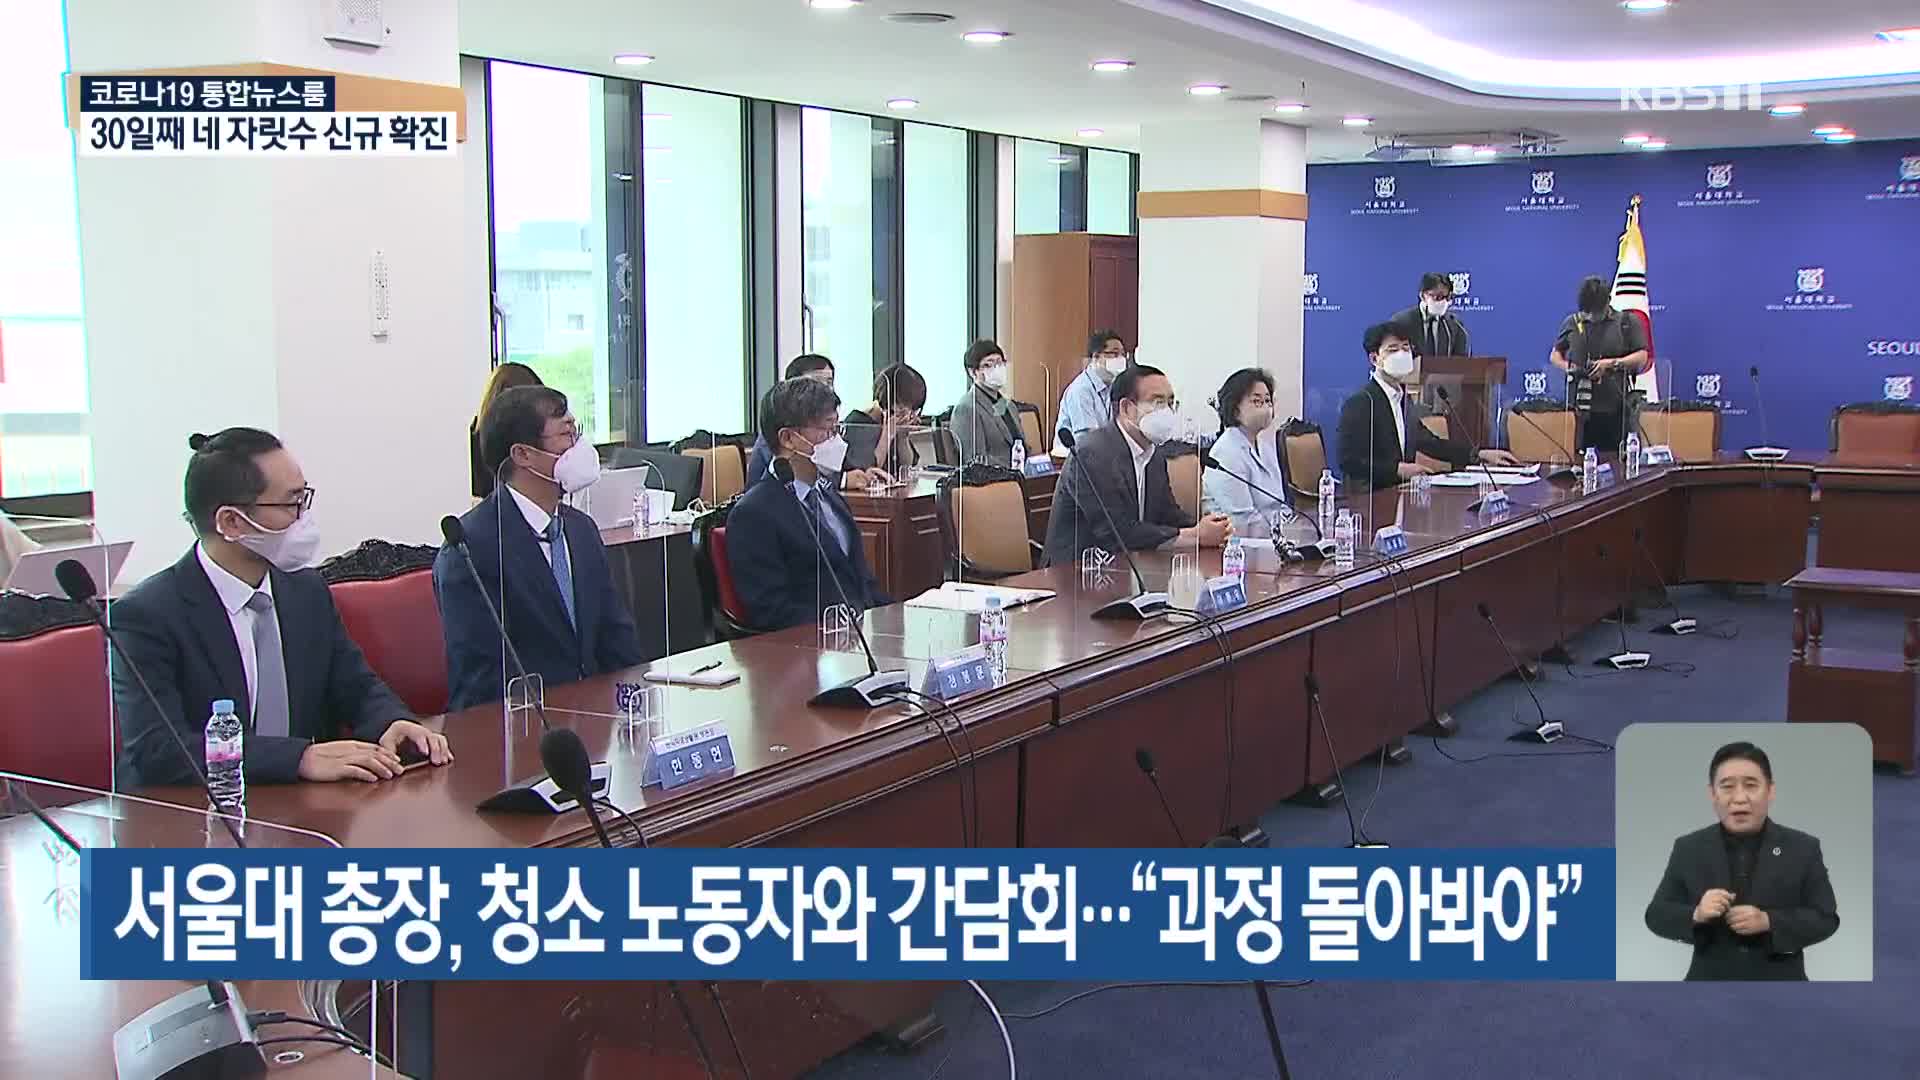 서울대 총장, 청소 노동자와 간담회…“과정 돌아봐야”